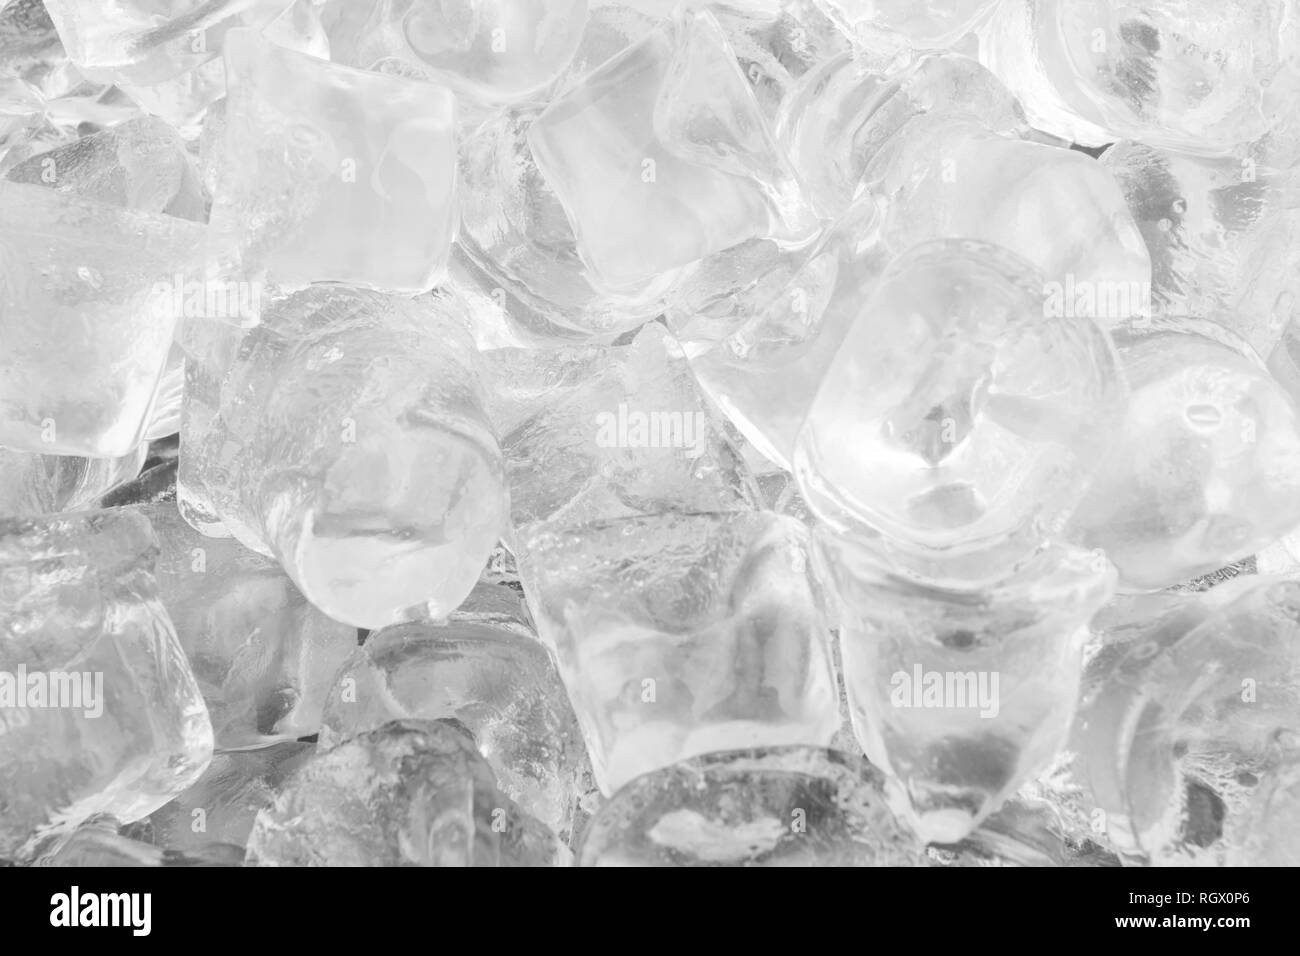 Ice jungen closeup kann als Hintergrund verwendet werden Stockfoto